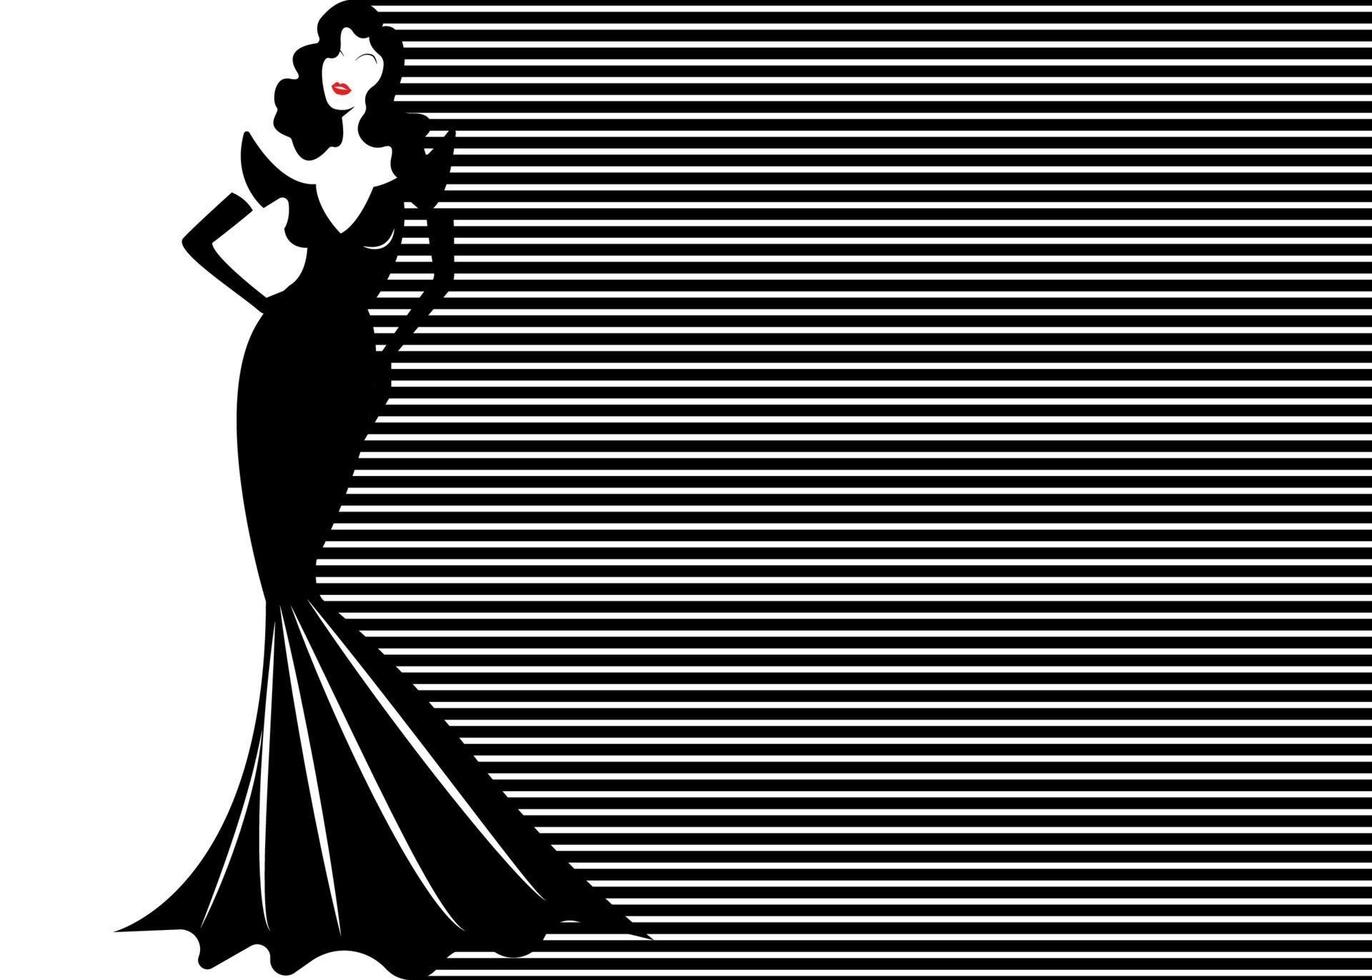 modelo em fundo listrado preto e branco, estilo moda feminina vetor